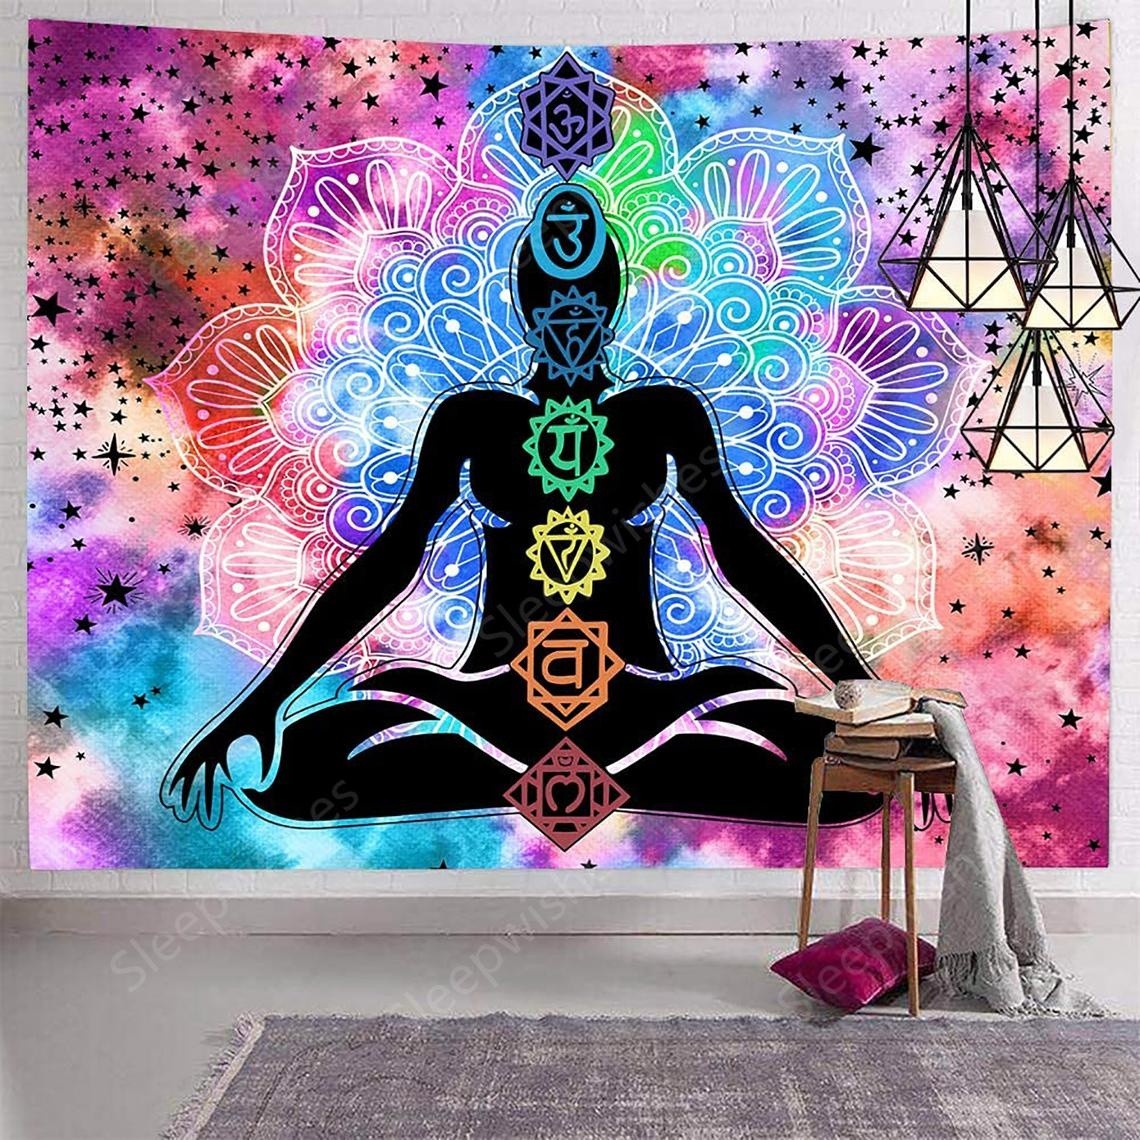 instructeur Zijdelings Expliciet Ulticool - Chakra Healing Aura Spiritualiteit Mandala - Wandkleed - 200x150  cm - Groot wandtapijt - Poster